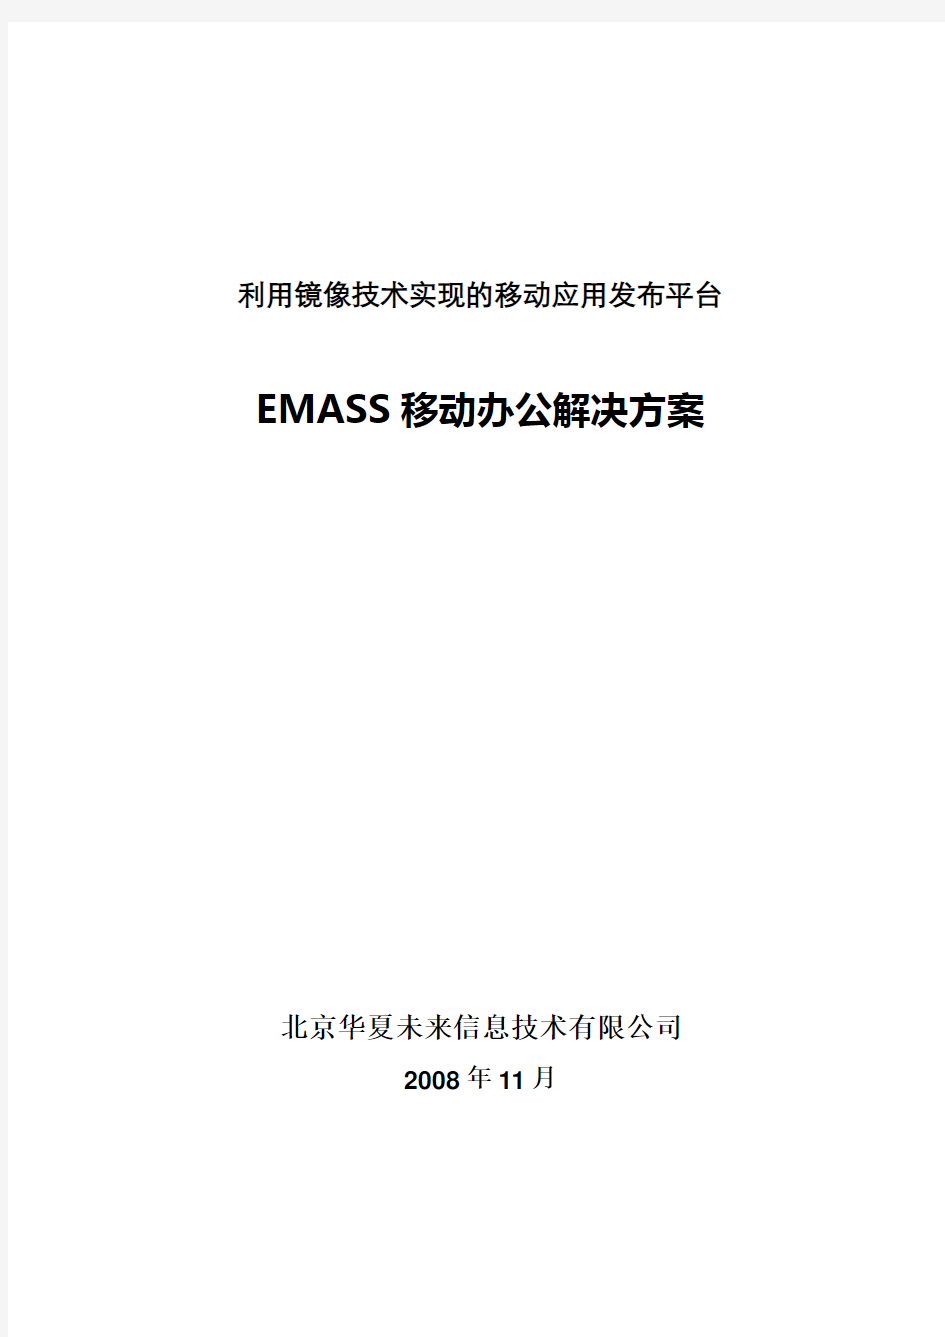 EMASS移动办公方案书